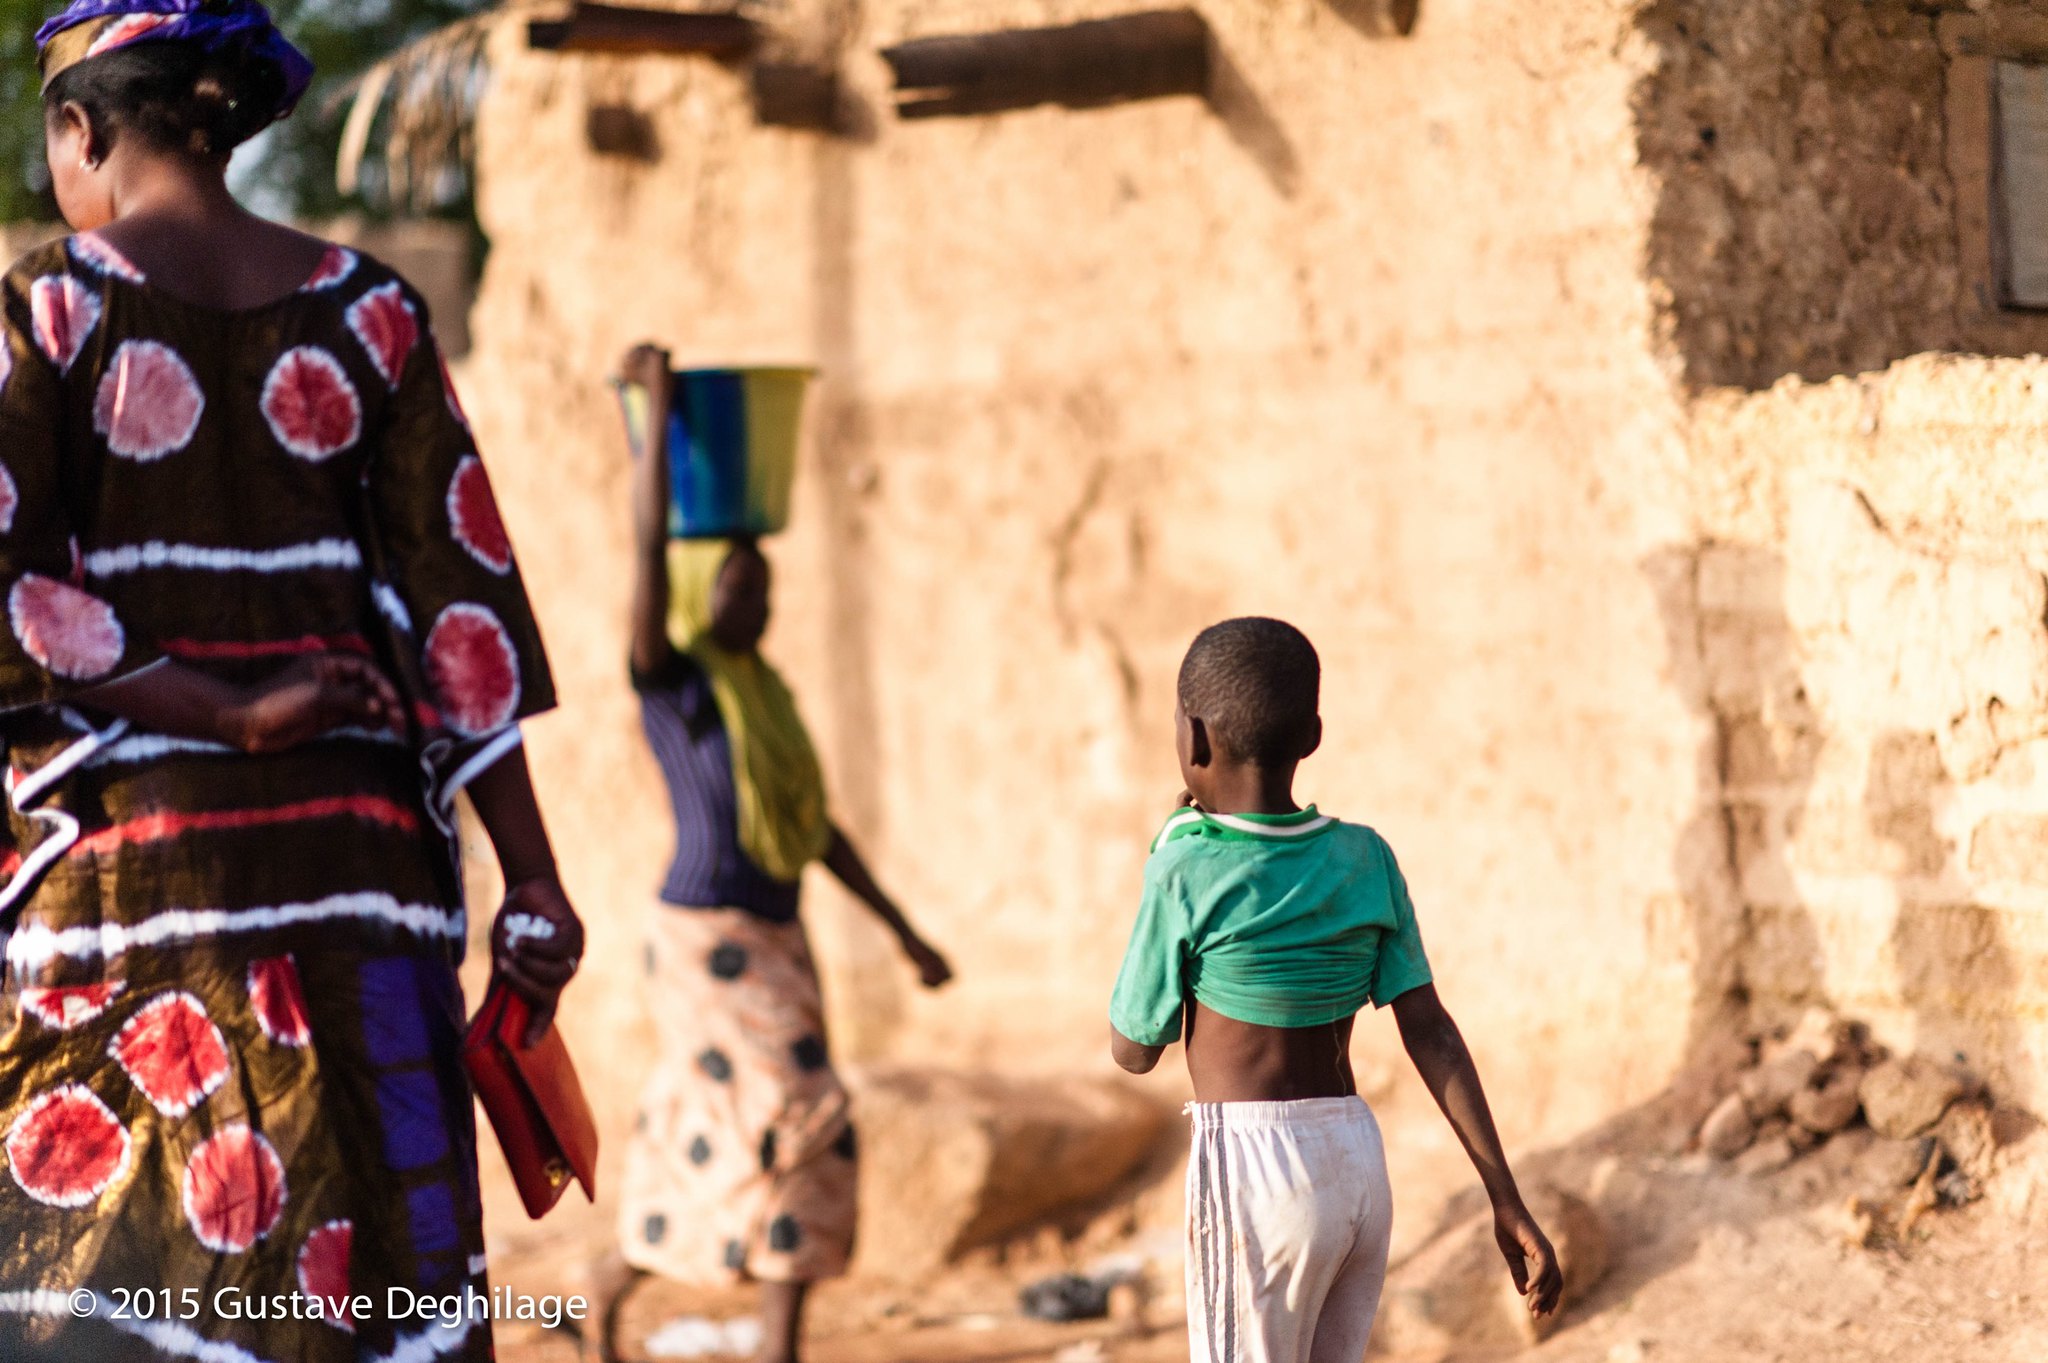 Le Niger : l’indice de fécondité passe de 7,2 enfants par femme à 6,2 enfants